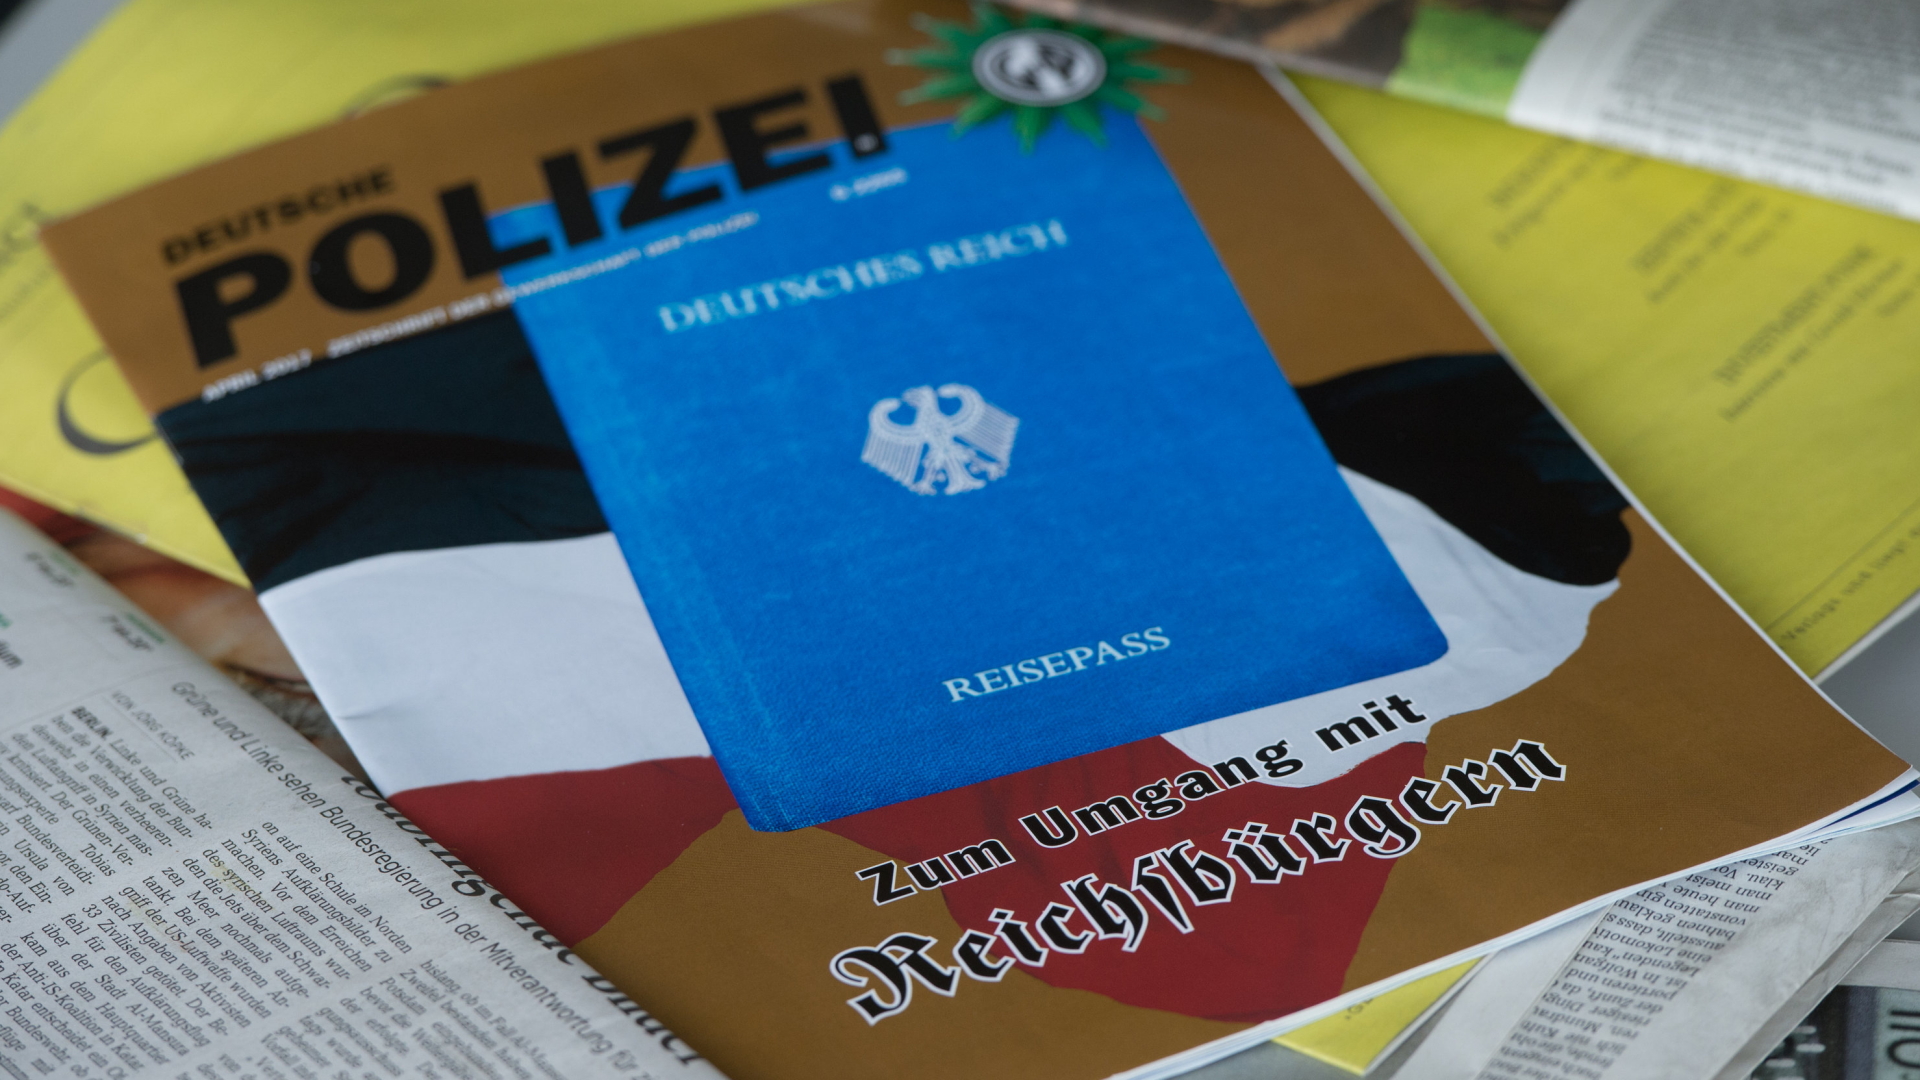 Ausgabe der Zeitschrift "Deutsche Polizei" mit dem Thema "Umgang mit Reichsbürgern" | dpa